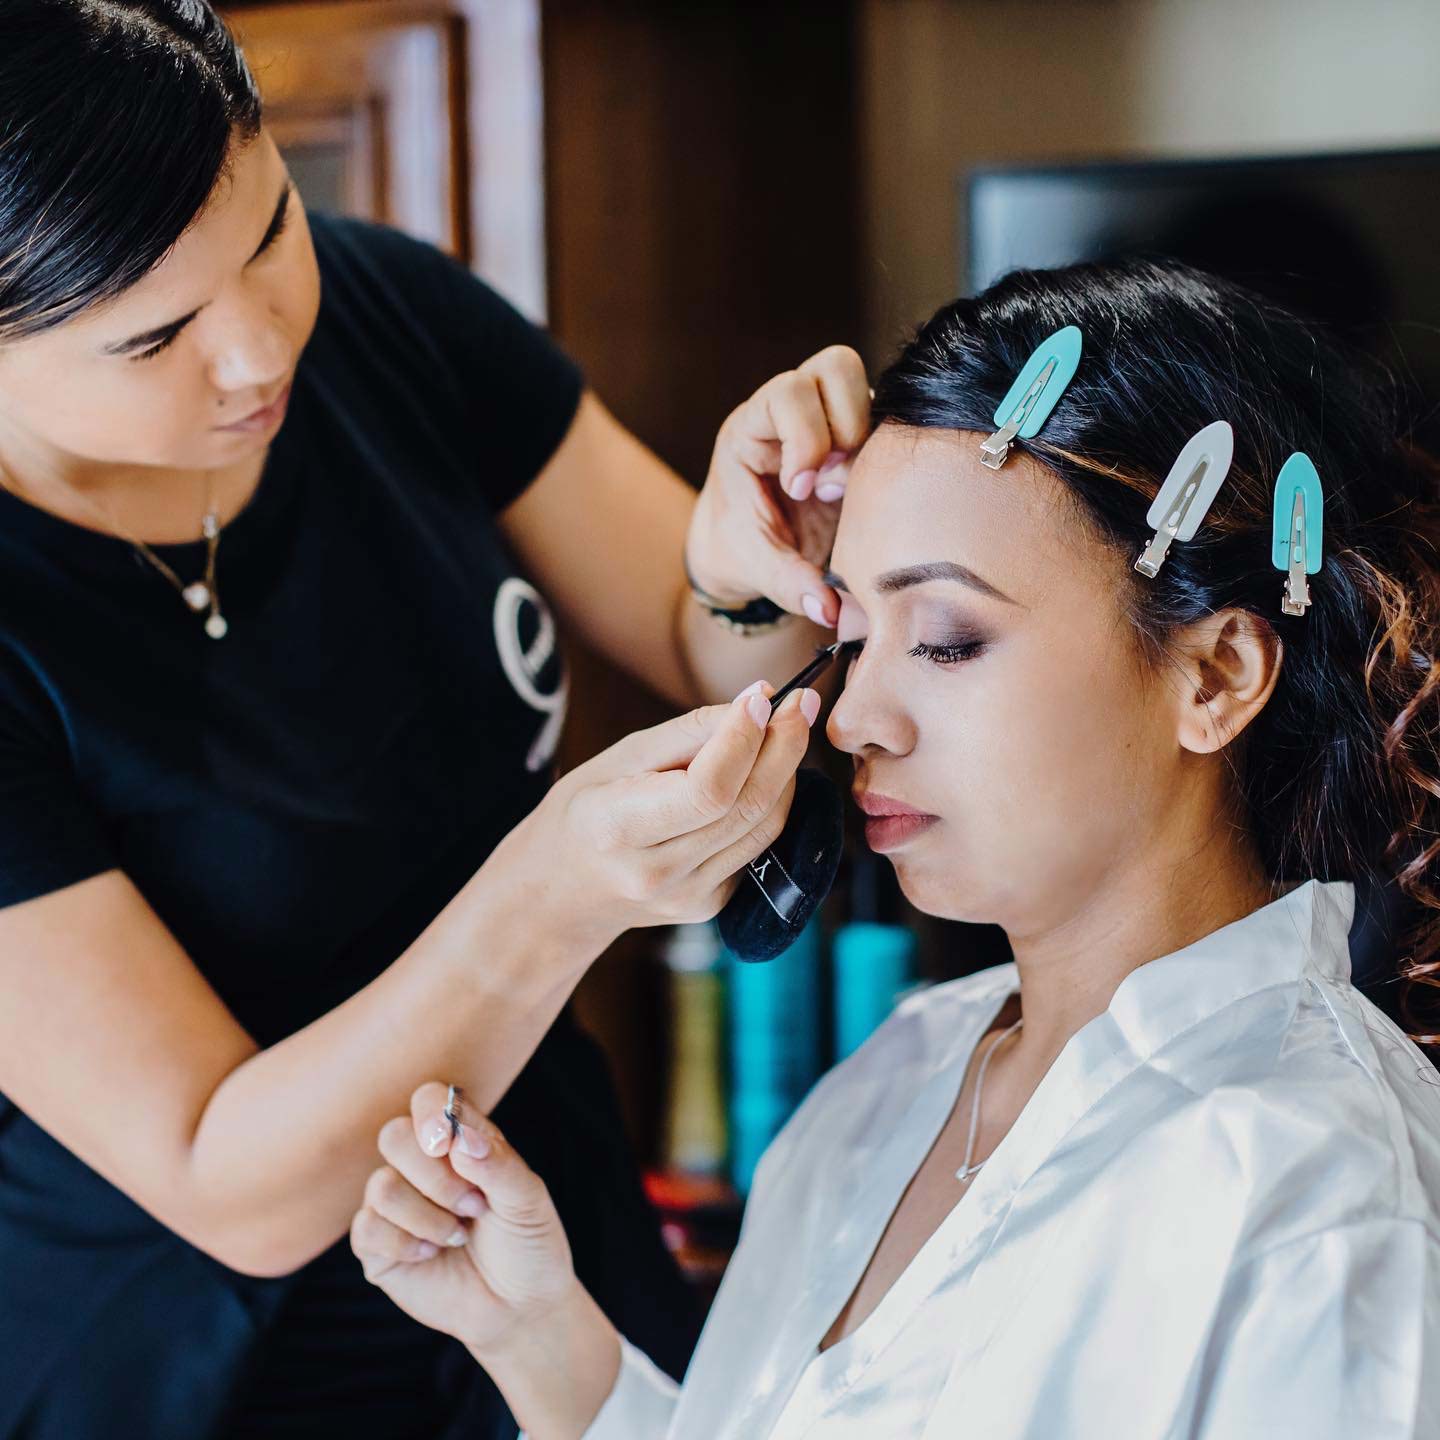 Makeup artist applying makeup to a customer.